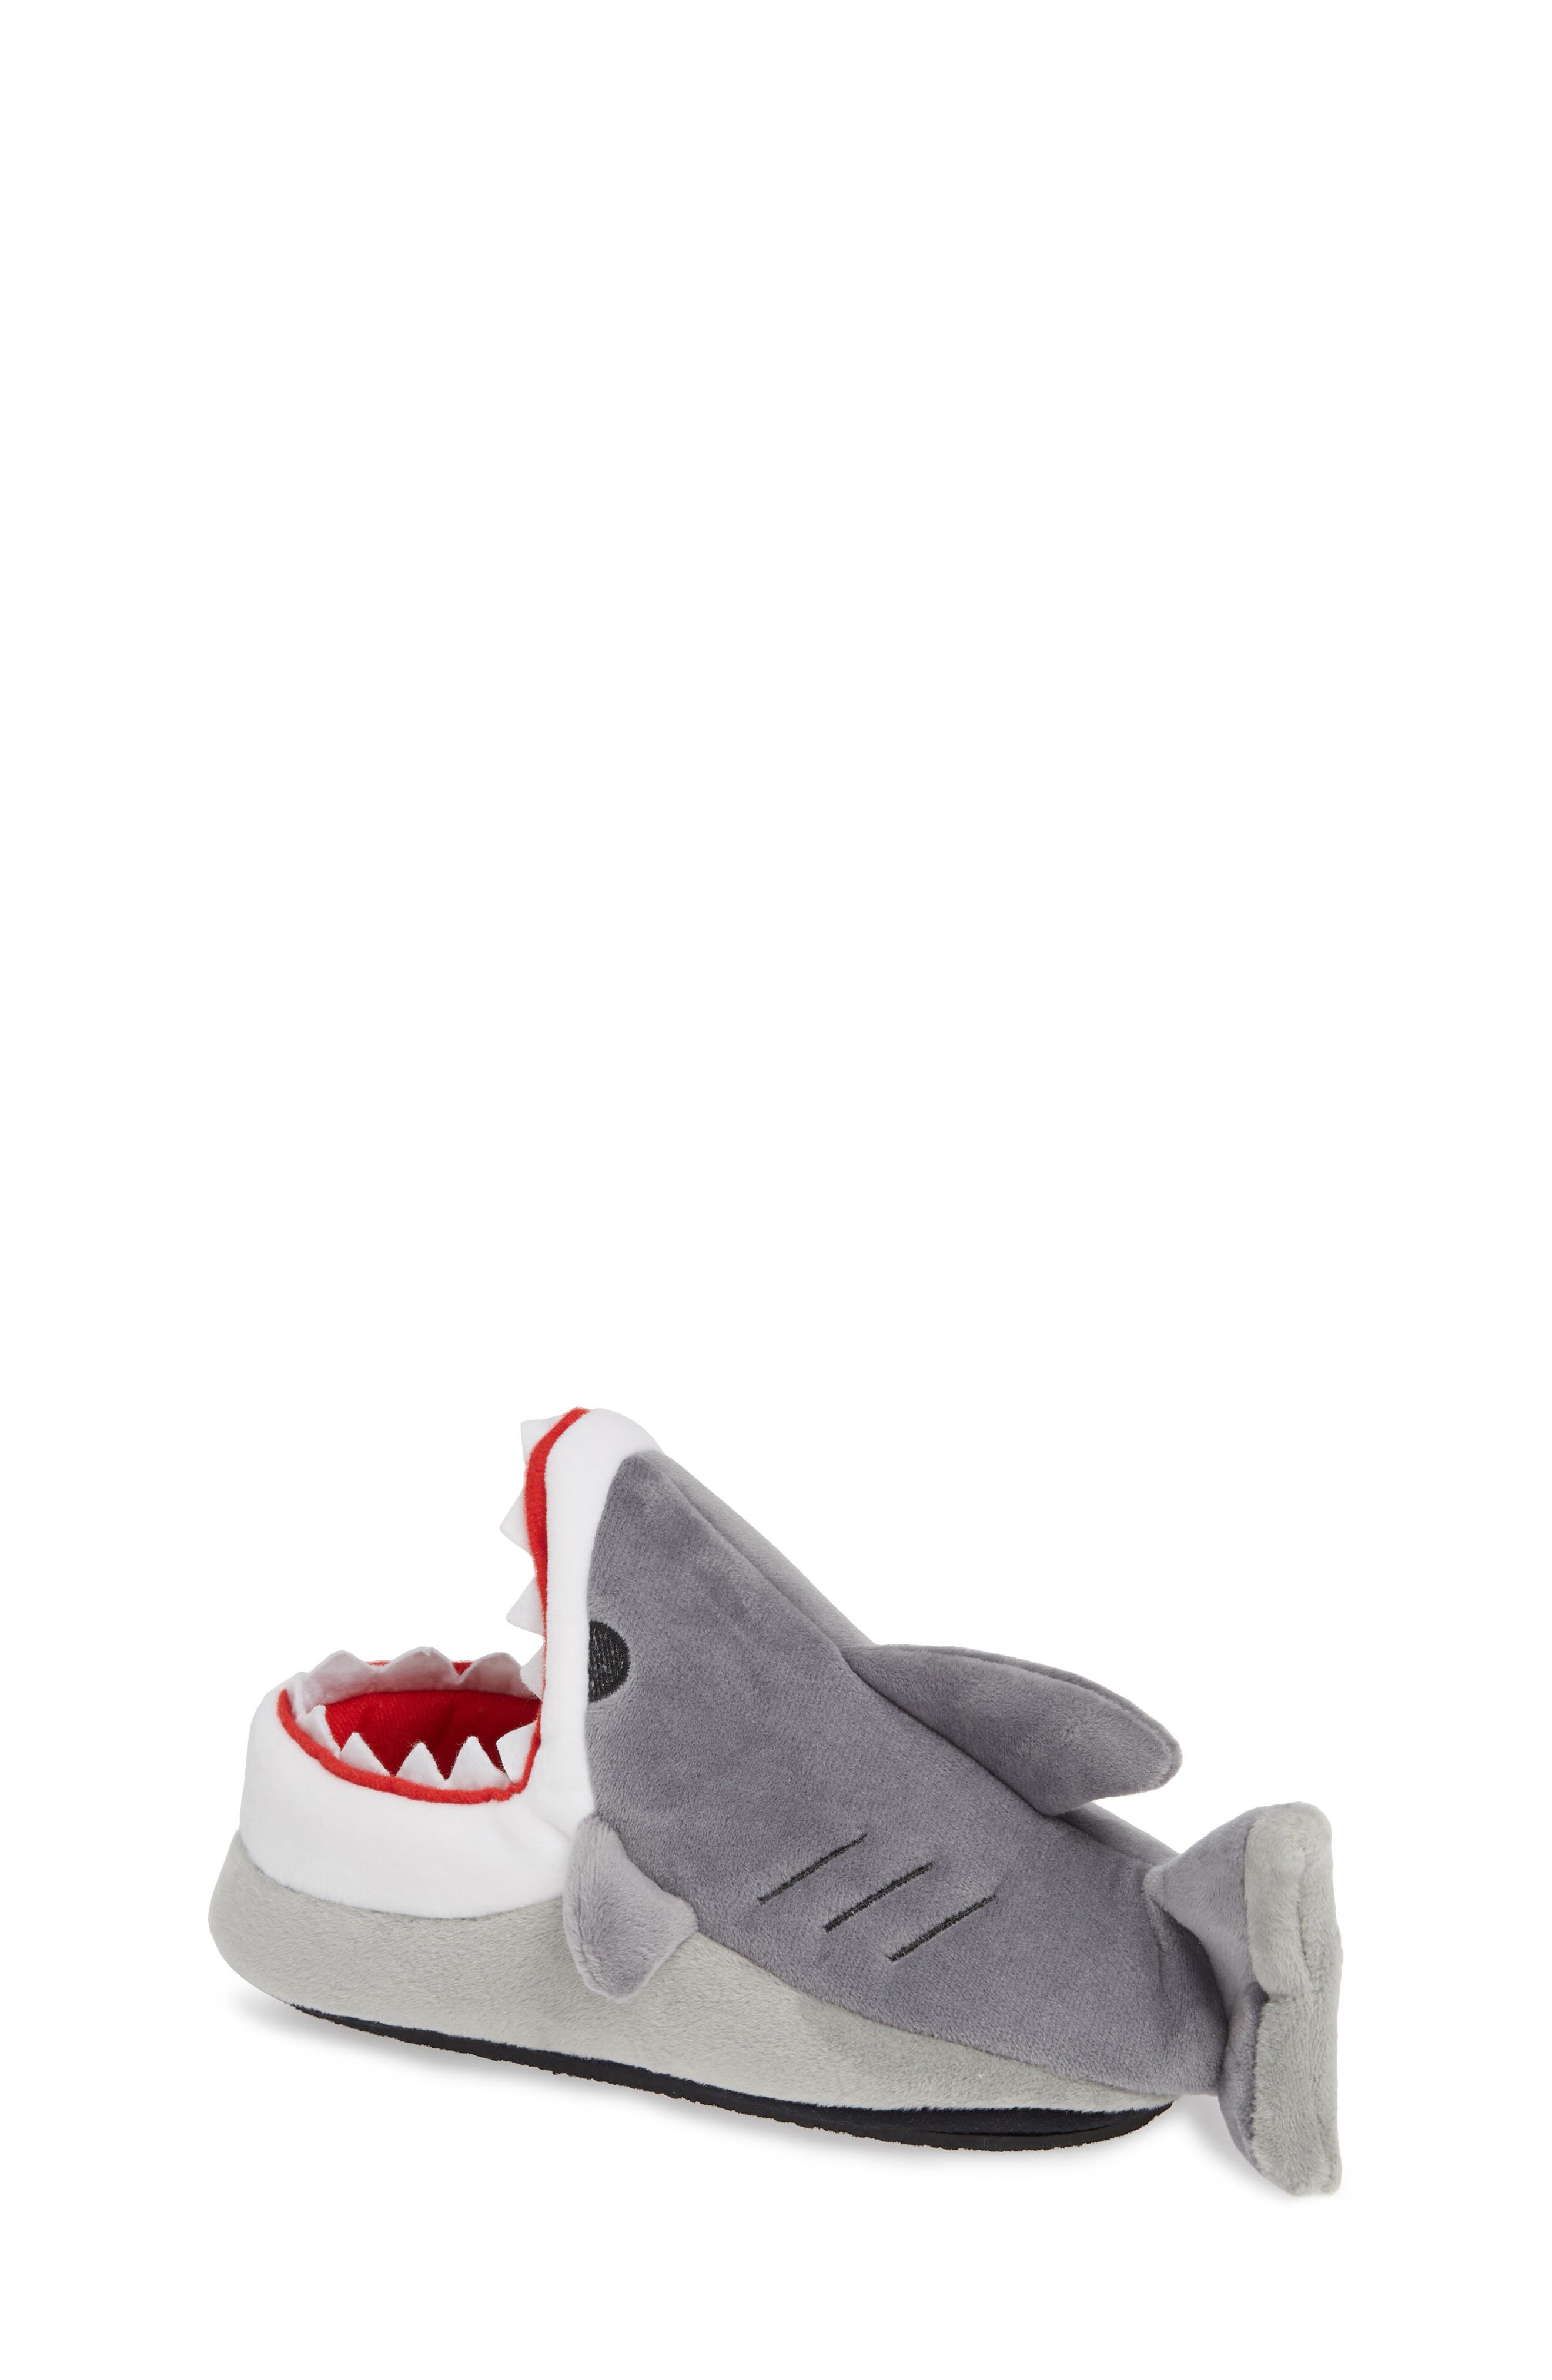 kids shark slippers